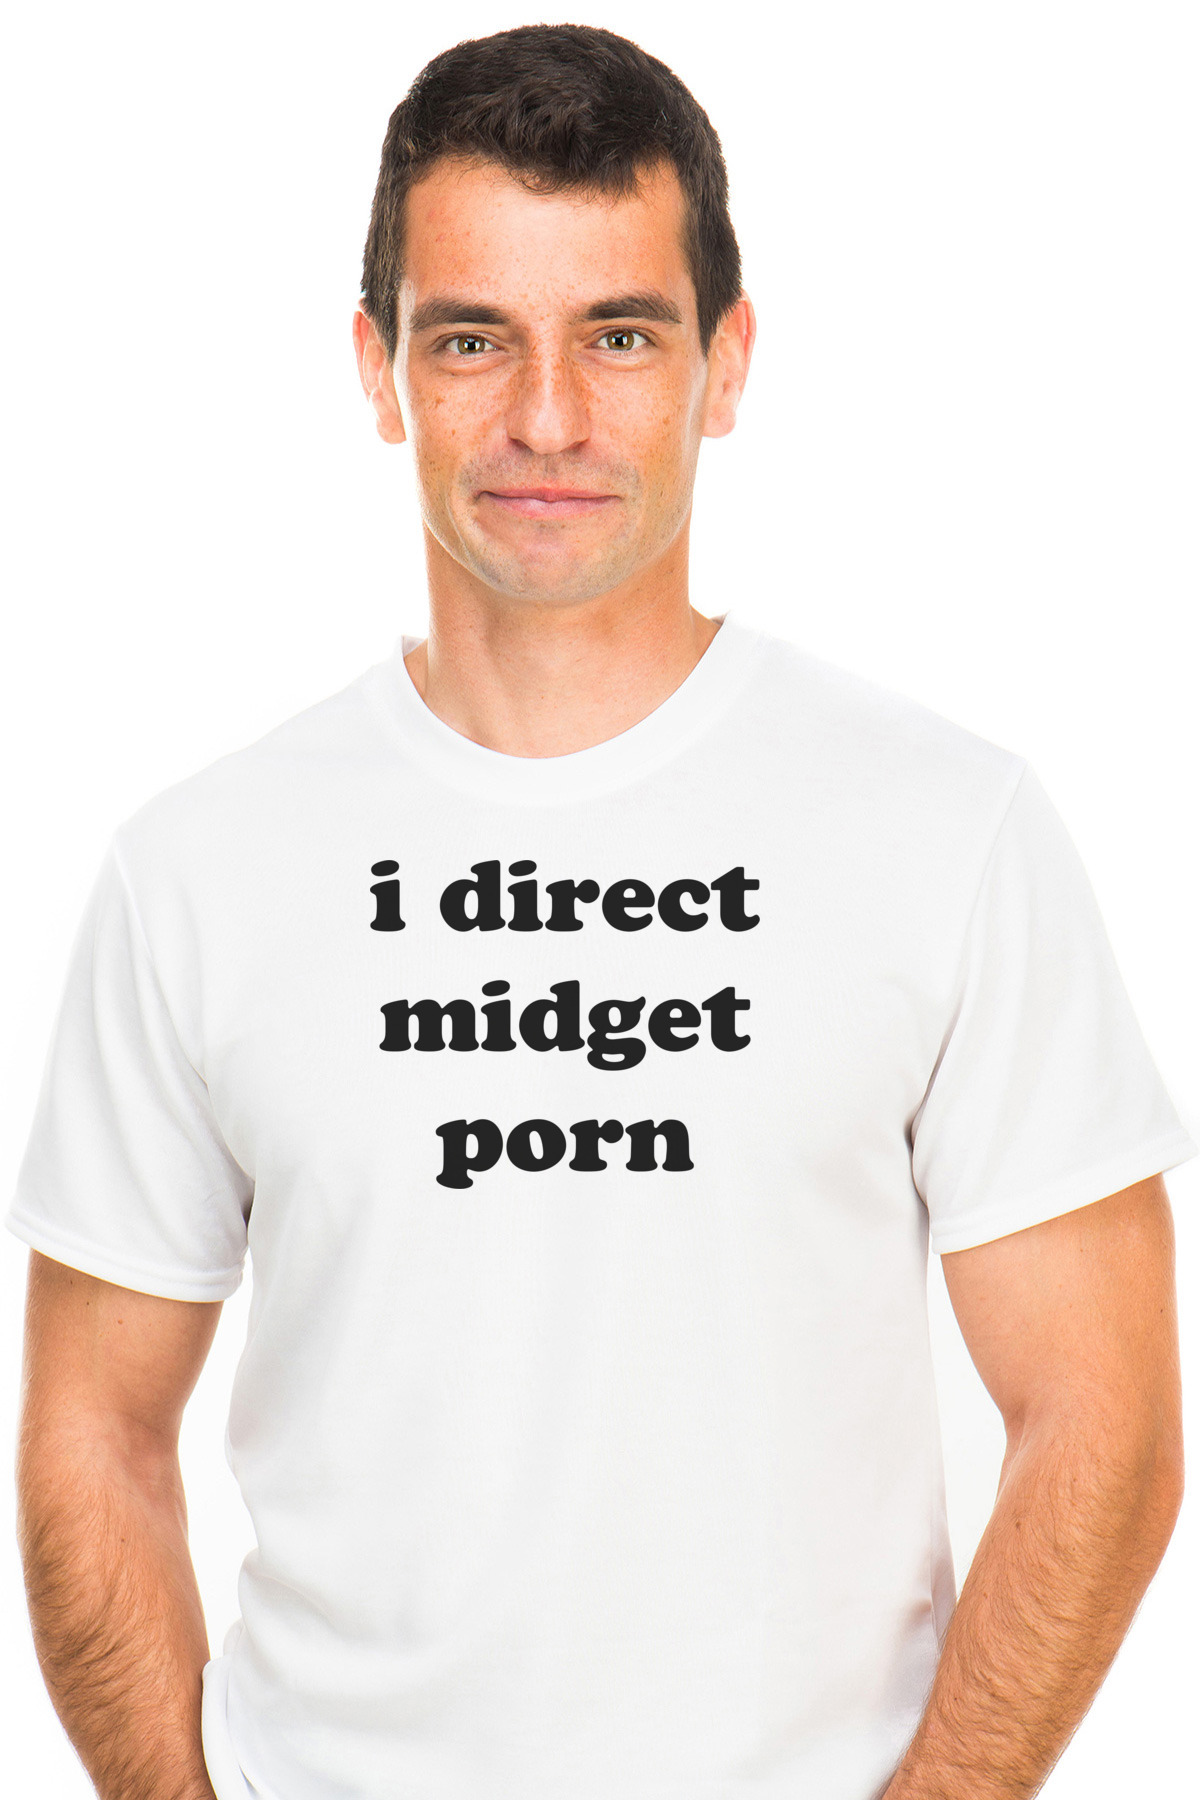 Pipes reccomend midget wins shirt